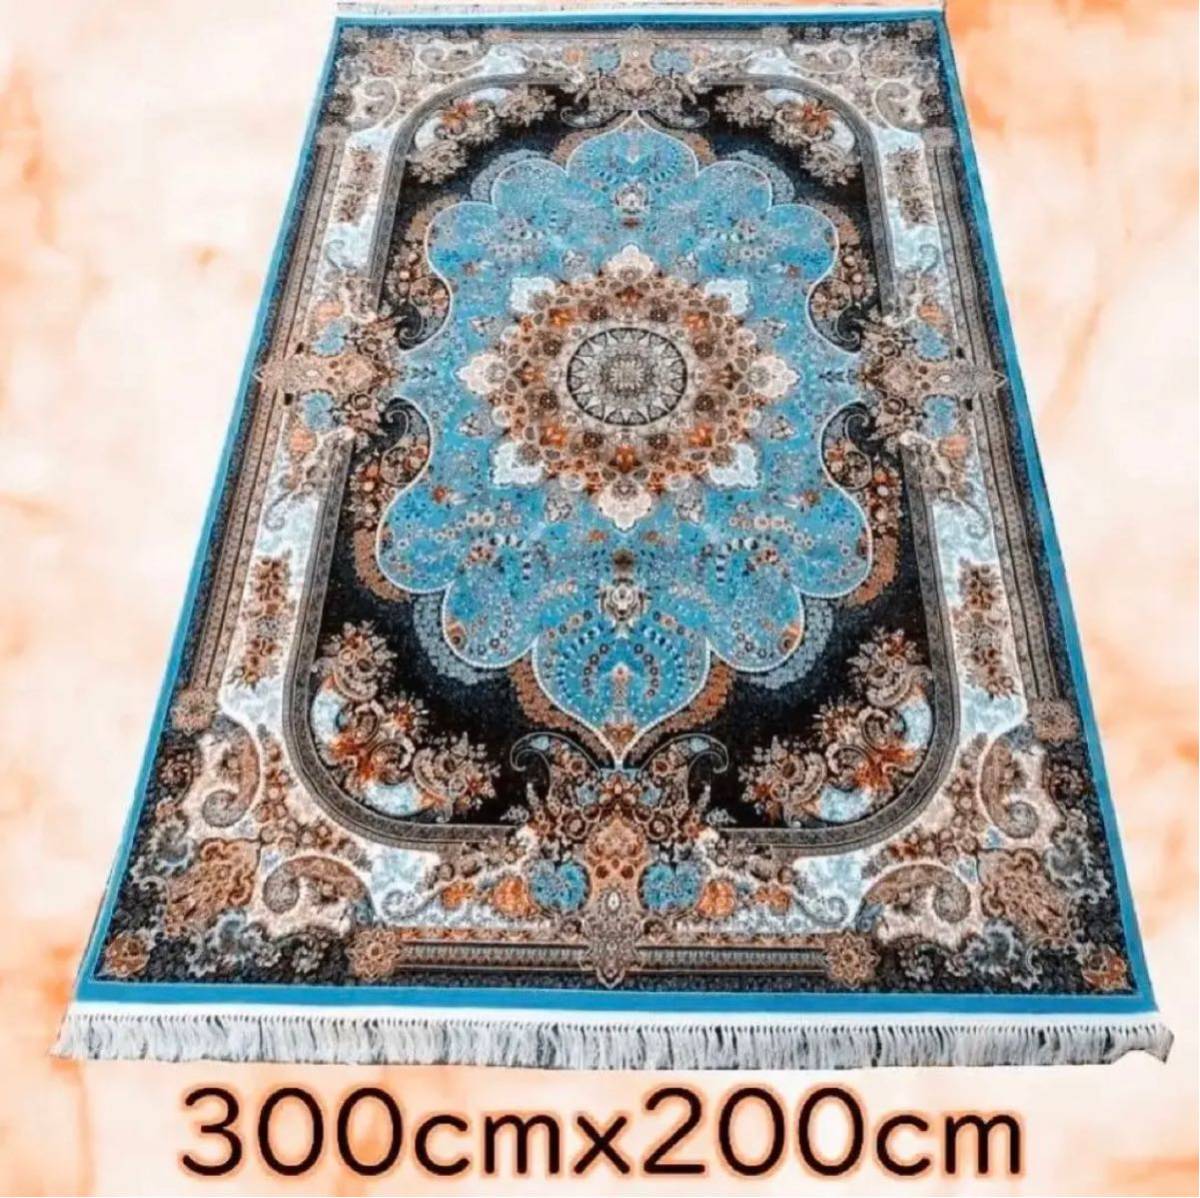 100万ノット★ウィルトン織り細かな密度ペルシャ絨毯/ターコイズブルー大型サイズ